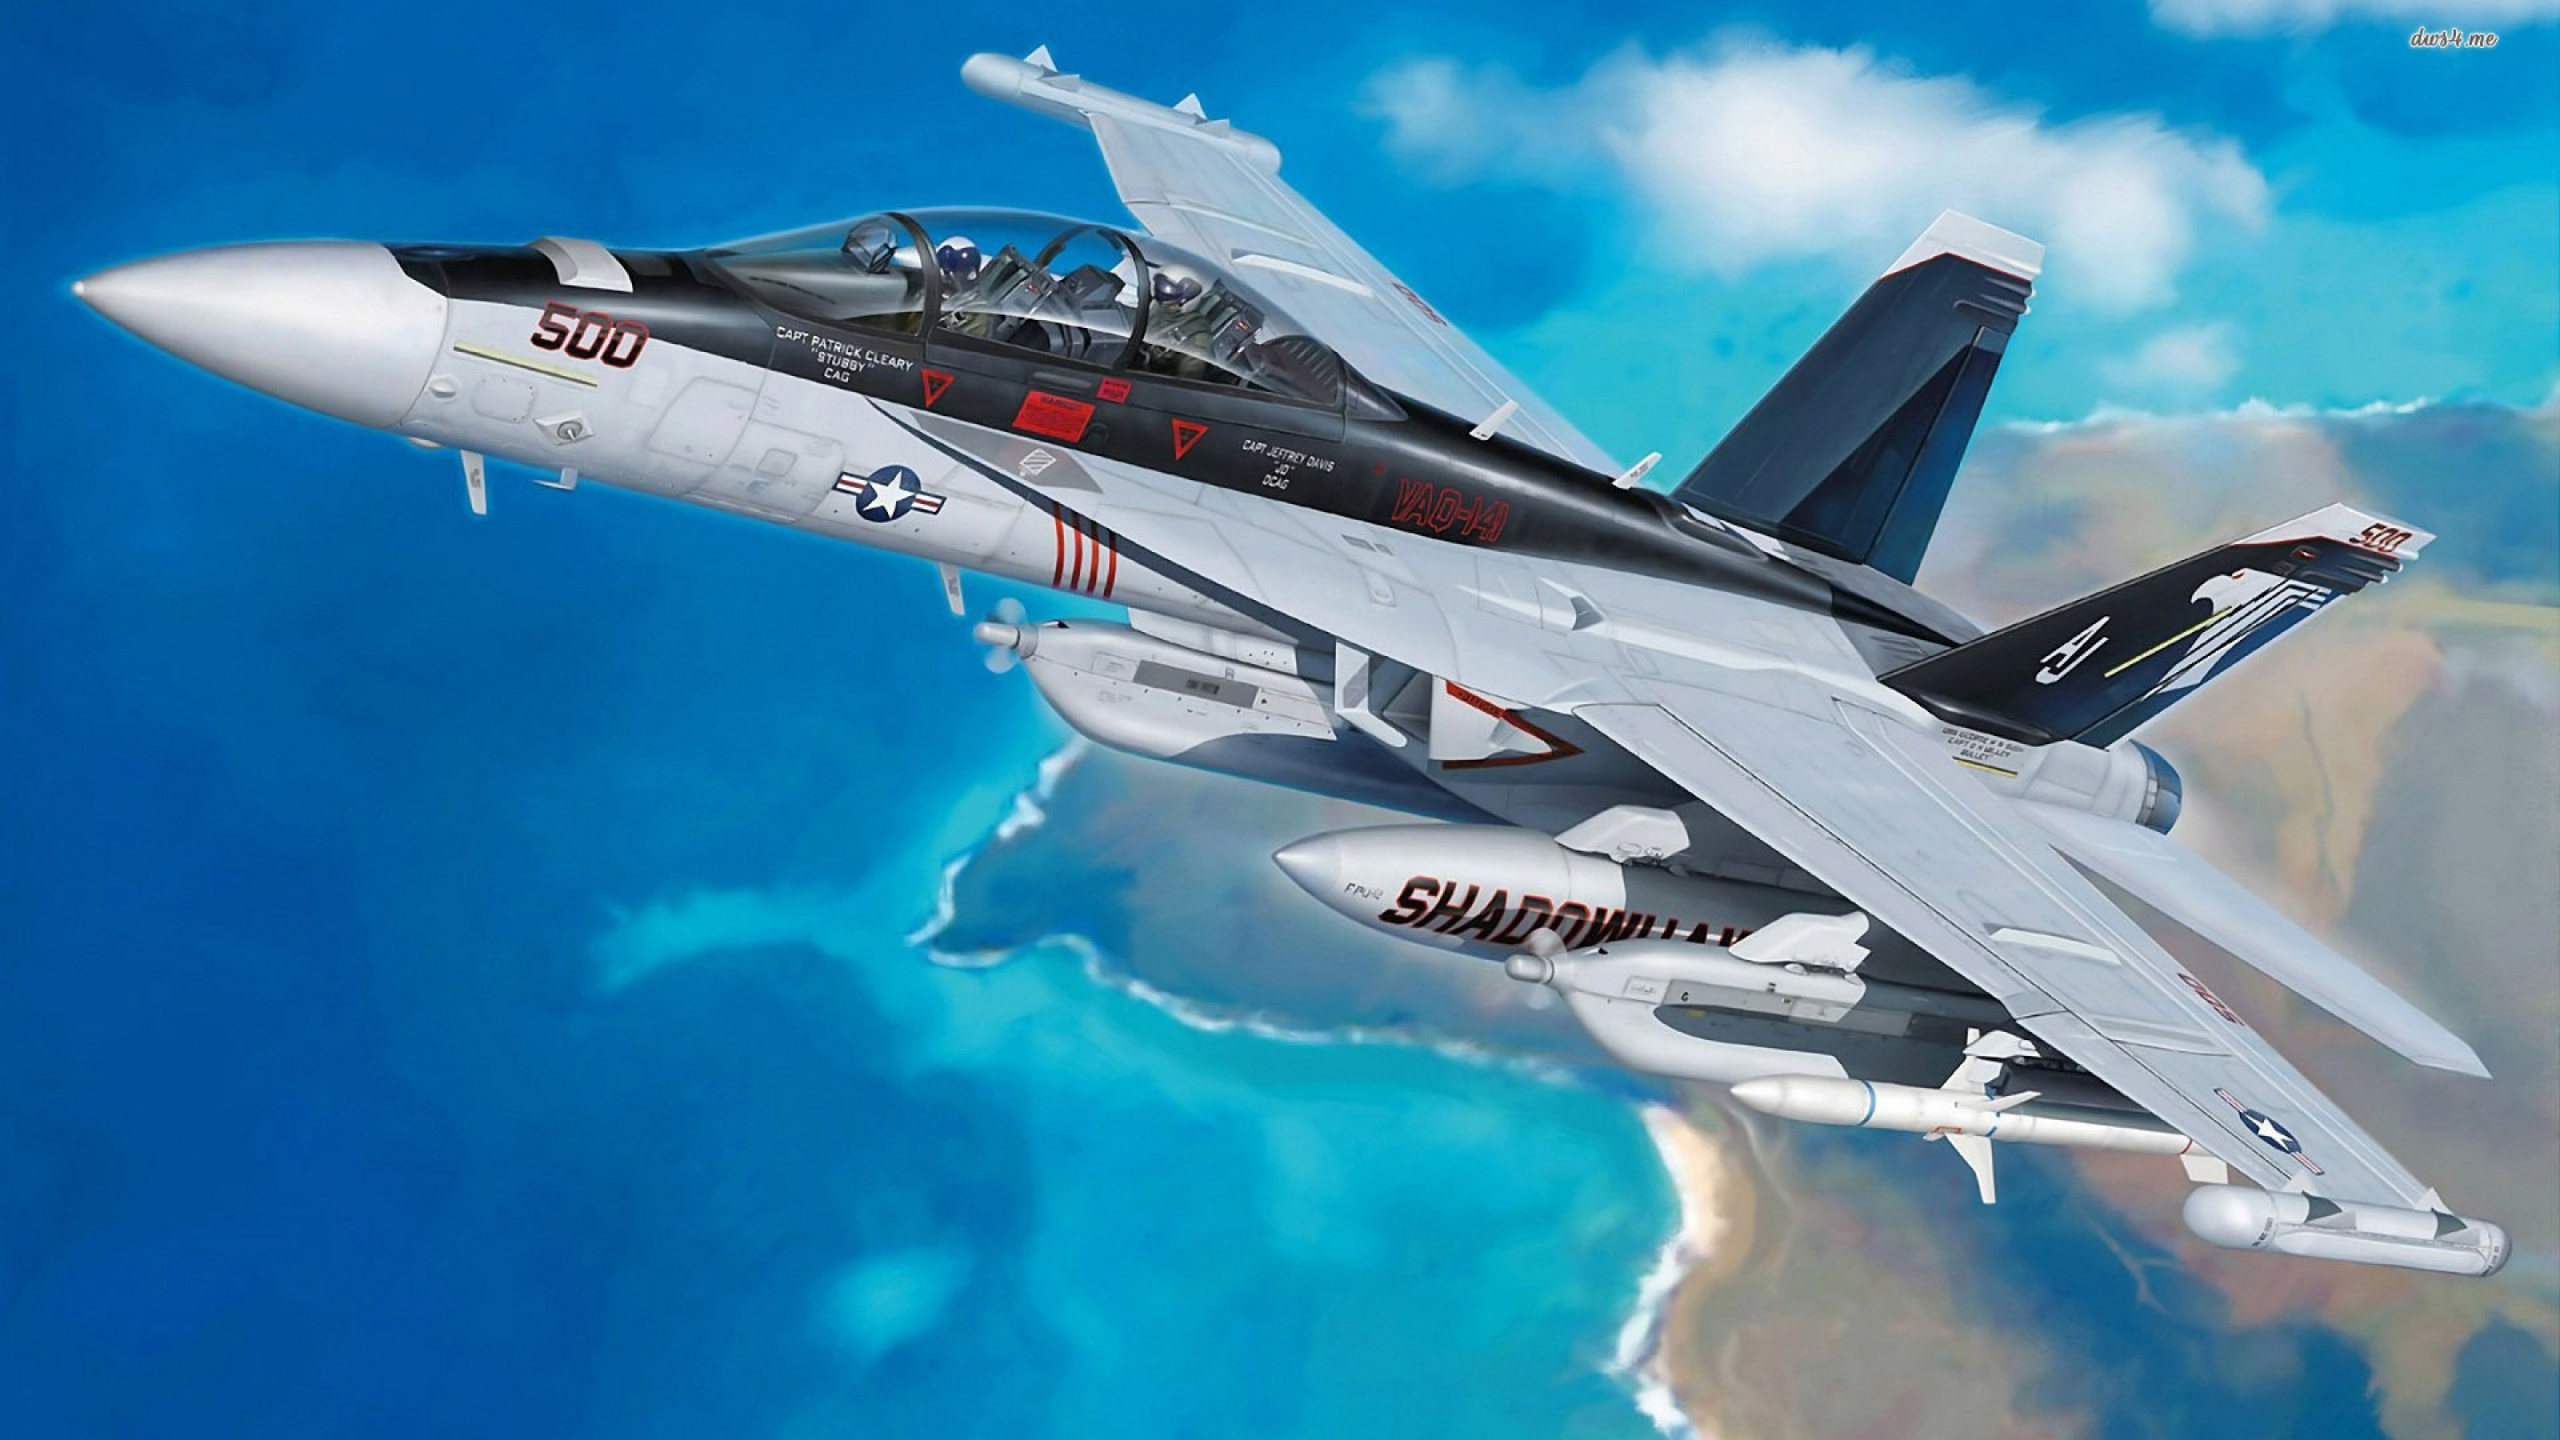 波音F-18E F超级大黄蜂, 军用飞机, 空军, 航空, 航空航天制造商 壁纸 2560x1440 允许